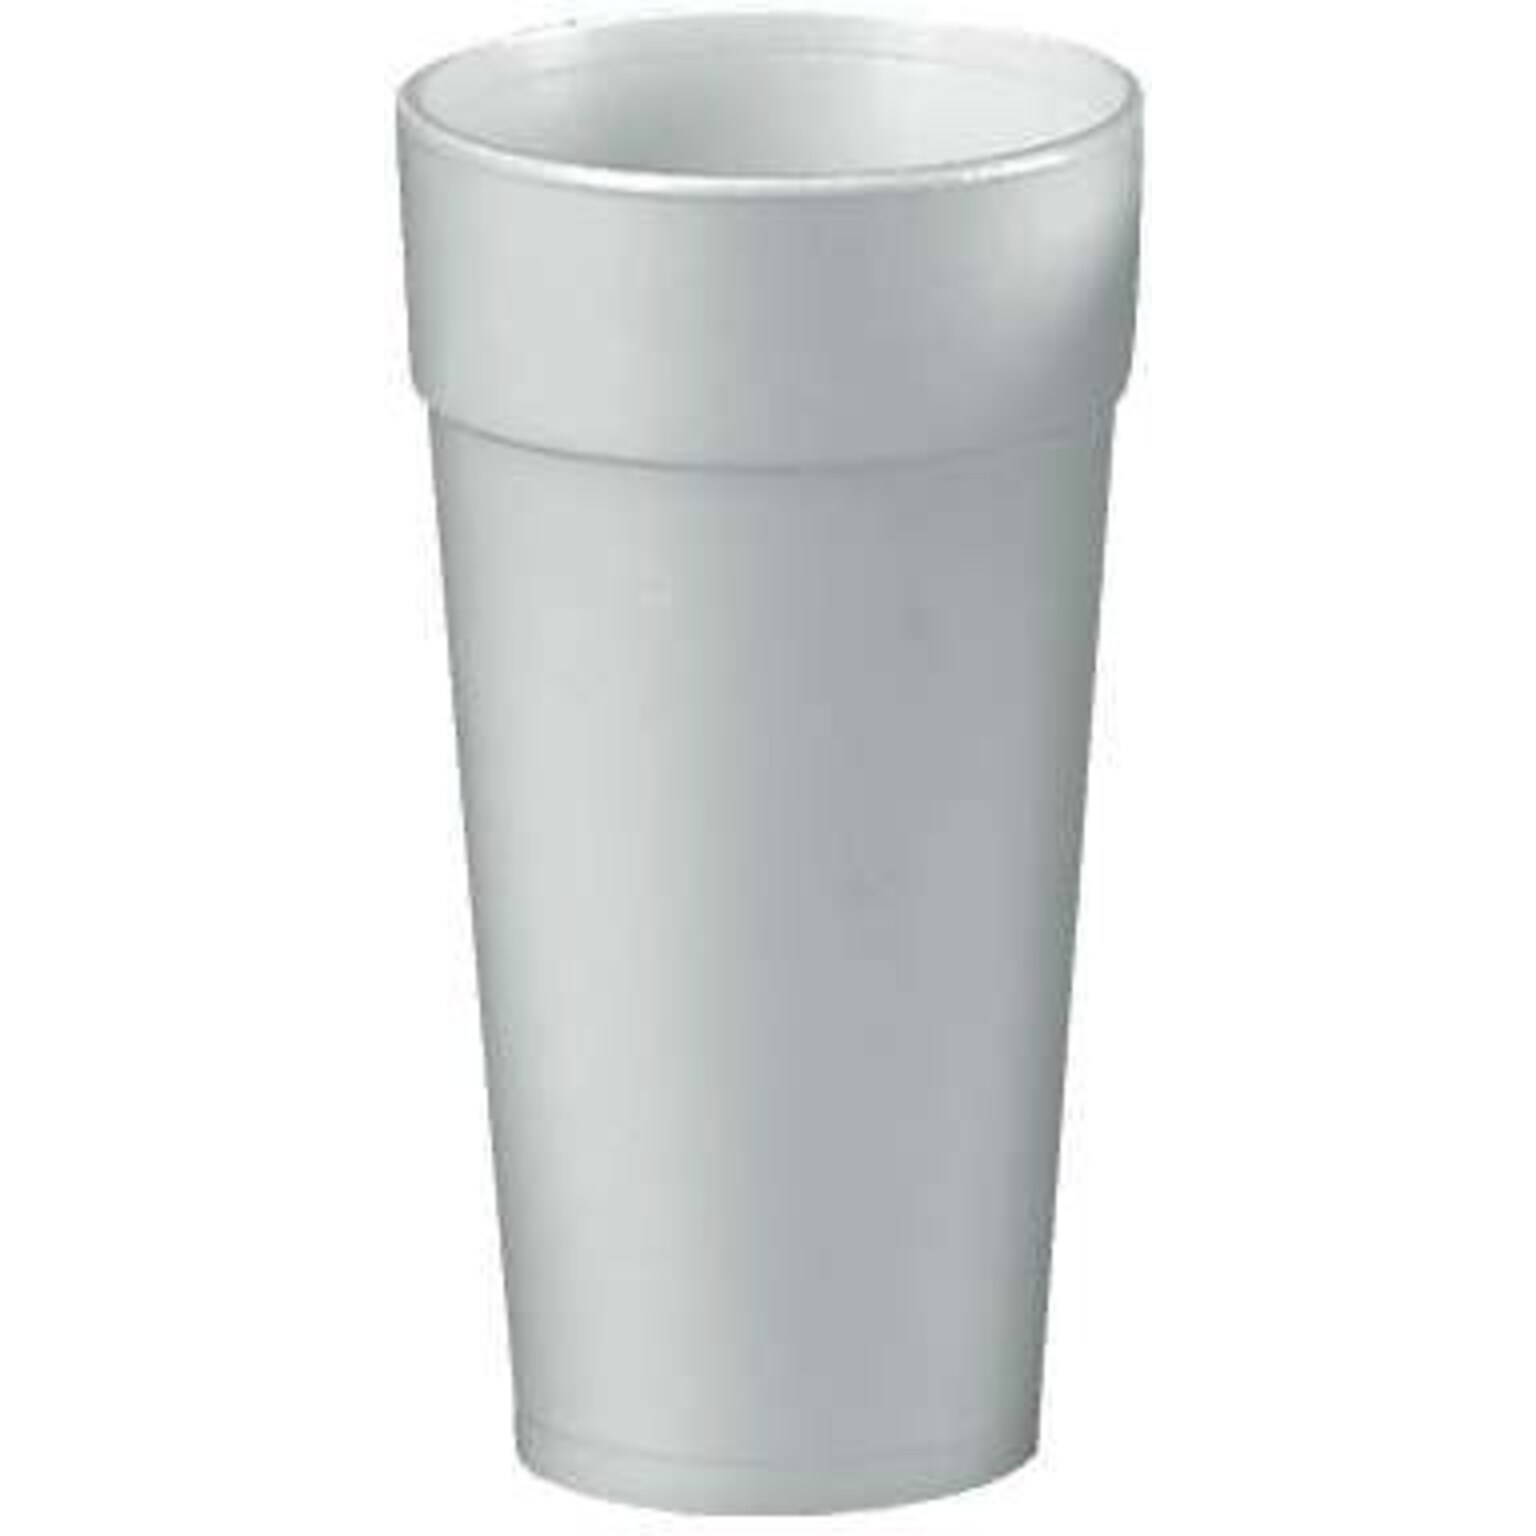 Dart® J Cups® Insulated Foam Cups 32 oz., White, 500/Carton (32TJ32)